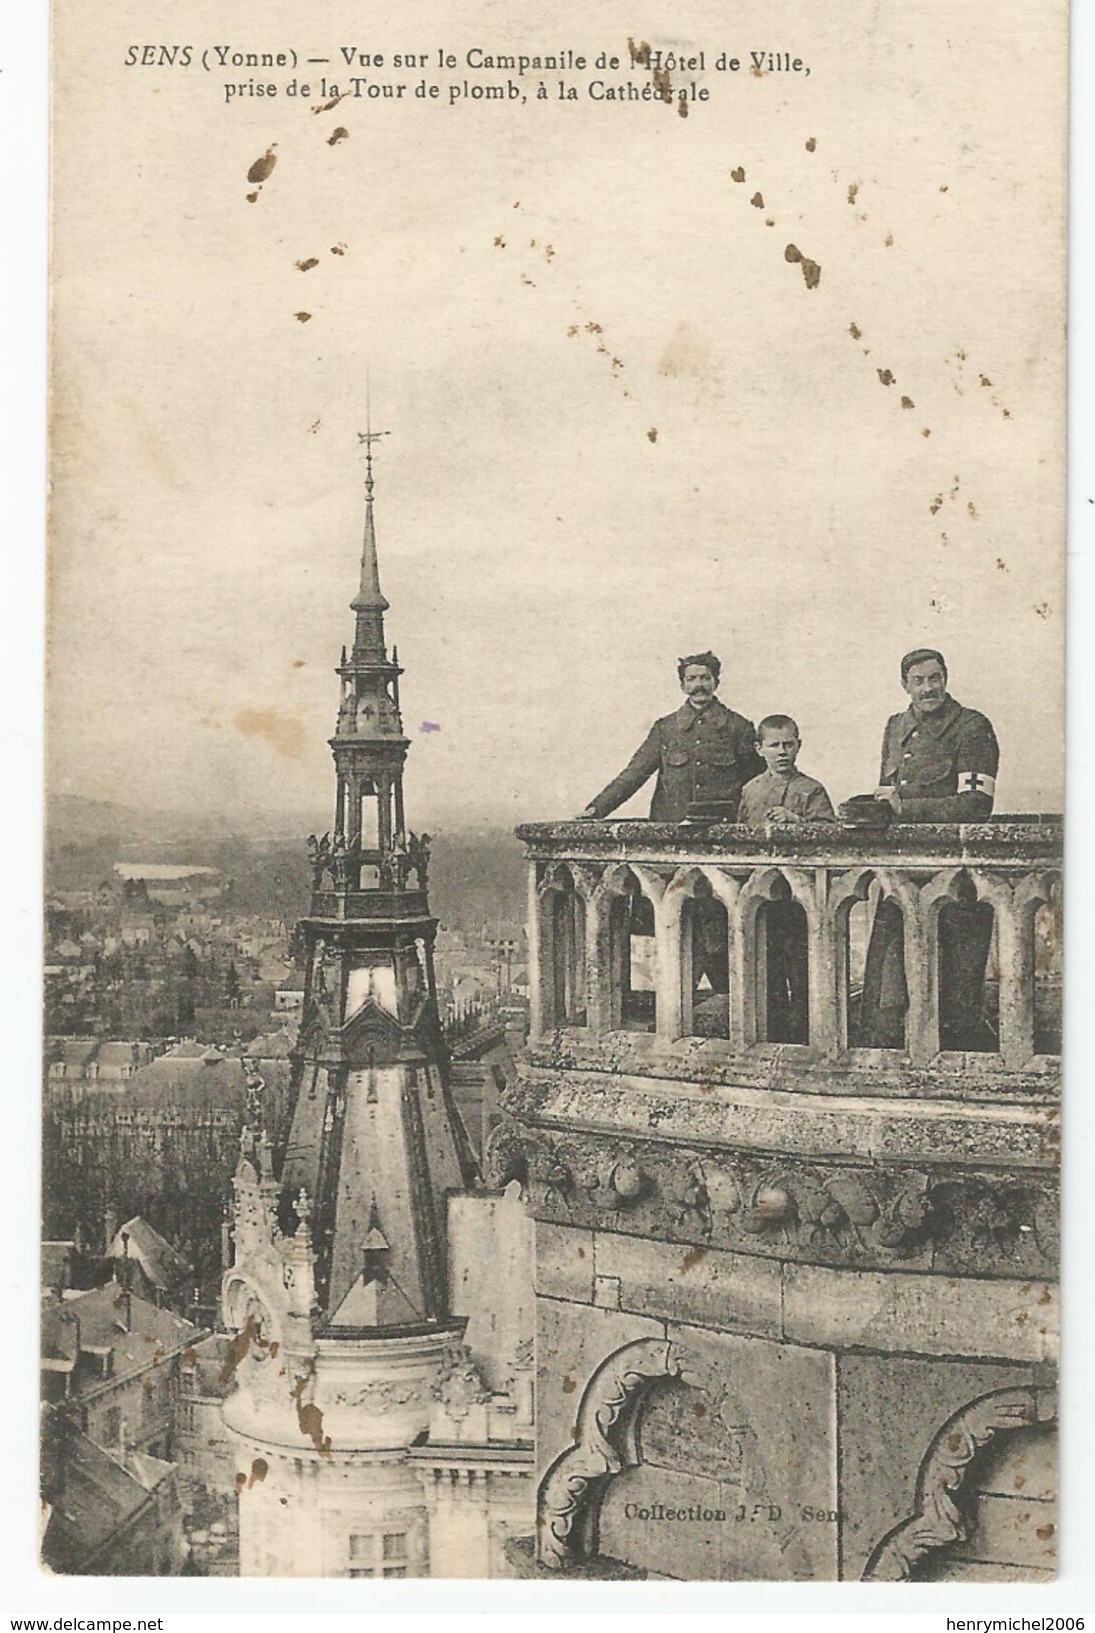 Marcophilie - Sens 89 Yonne Cachet Commission Militaire De La Gare Sens Lyon Est 1917 - Guerre De 1914-18